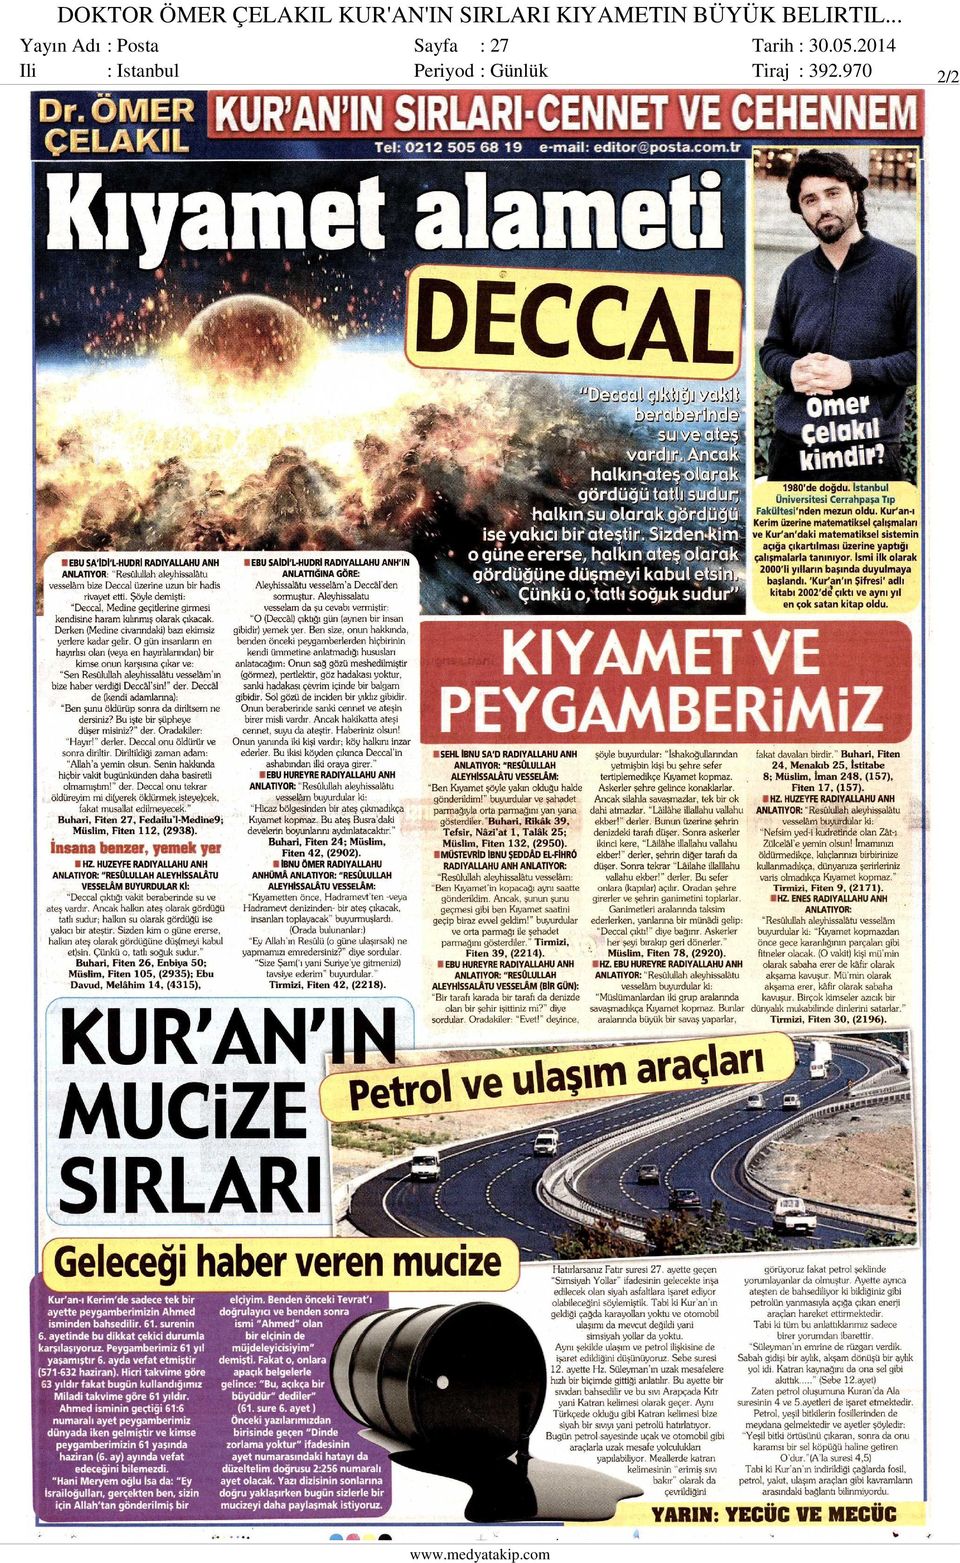 .. Yayın Adı : Posta Ili : Istanbul Sayfa